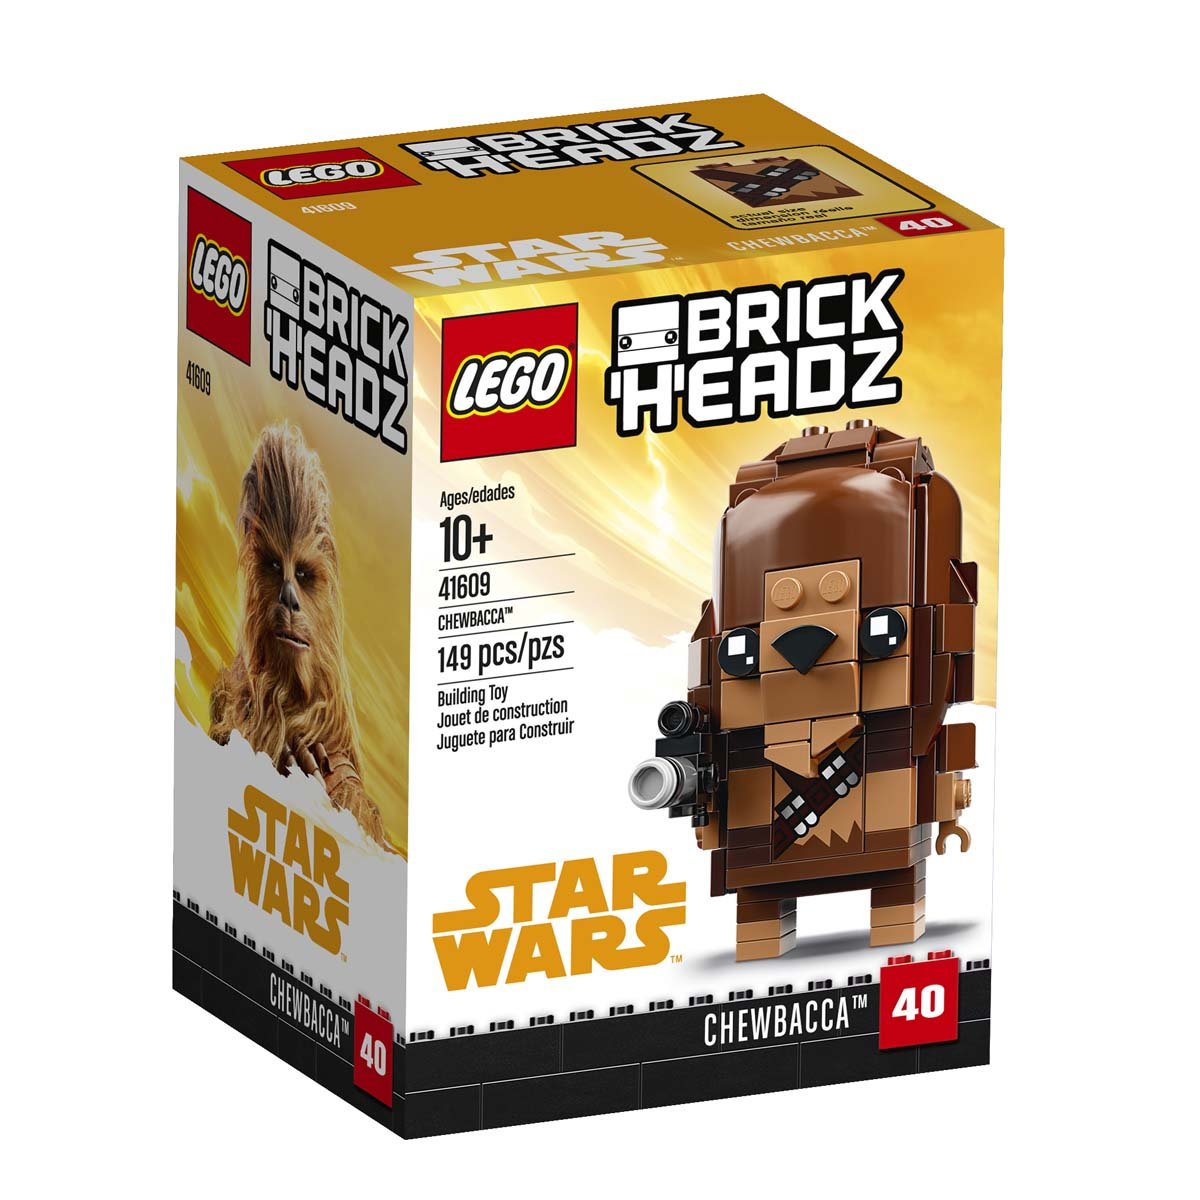 Brickheadz Chewbacca Star Wars Lego